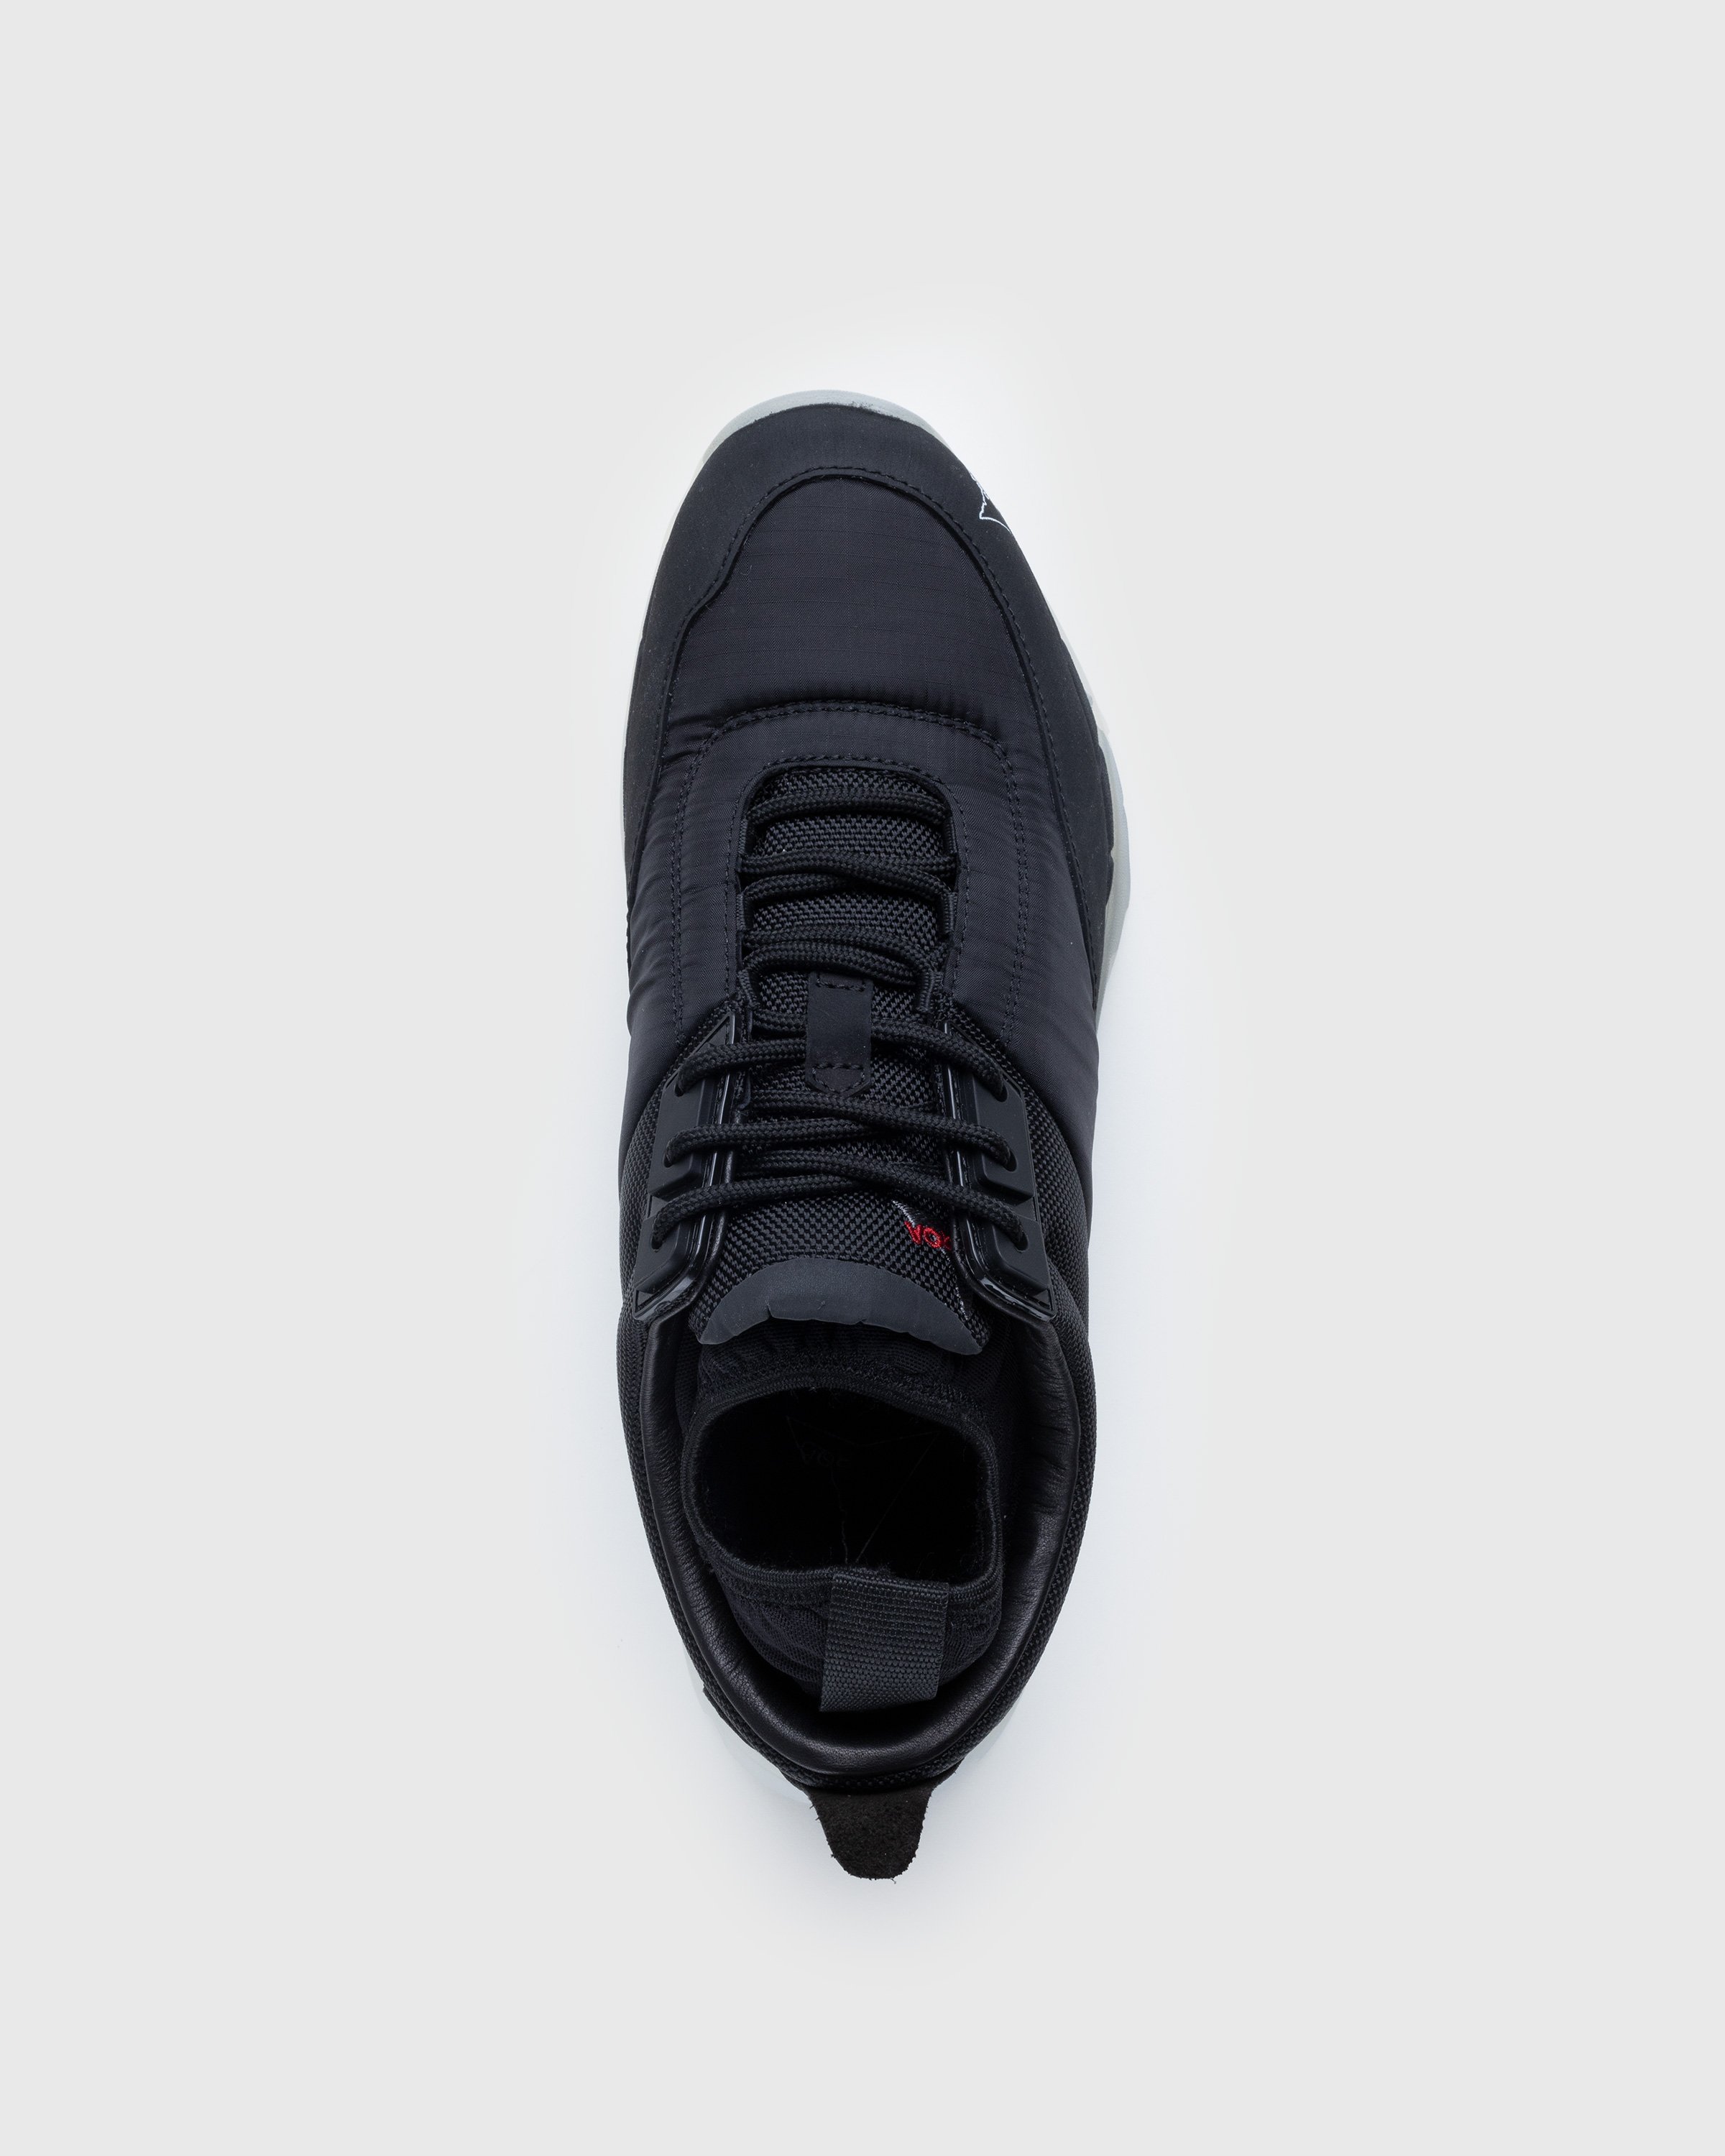 ROA - Double Neal Sneaker Black - Footwear - Black - Image 5